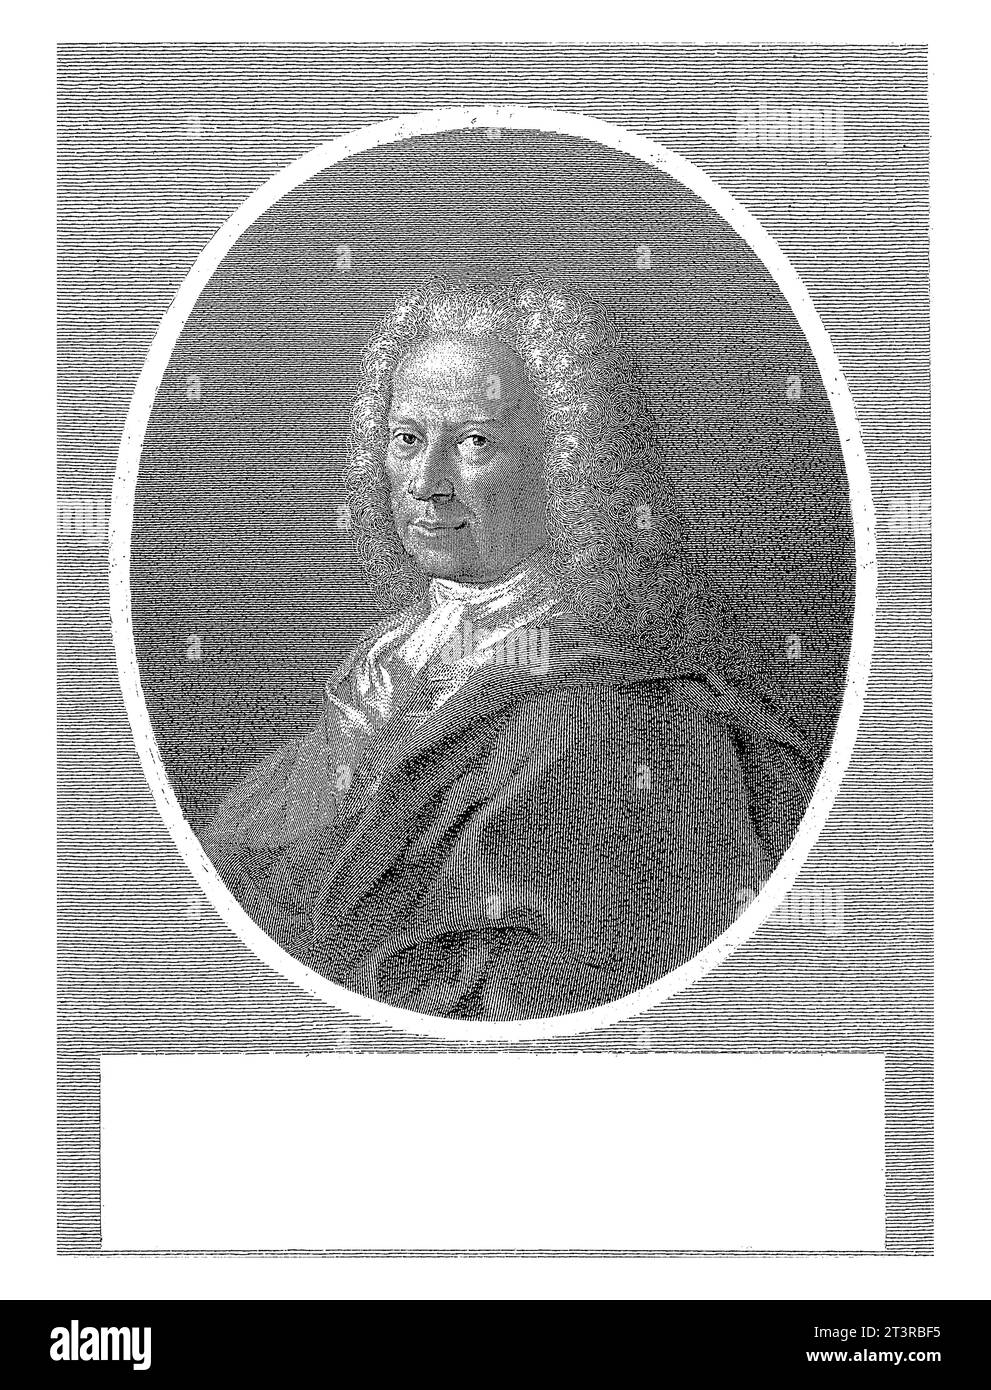 Porträt des Historikers Scipione Maffei, Giovanni Marco Pitteri, 1712 - 1786, Vintage-Gravur. Stockfoto